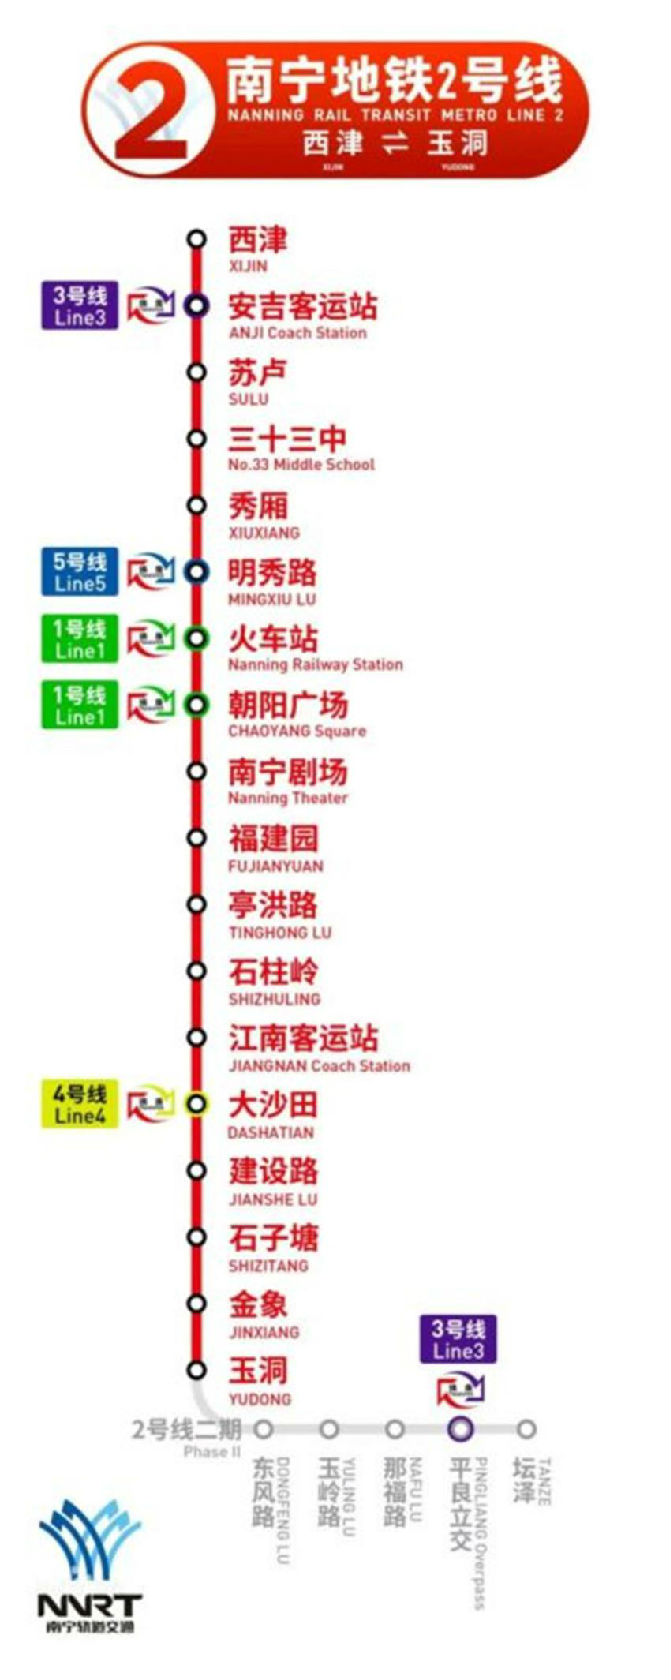 2号线东延线则是南宁地铁2号线一期工程(玉洞—西津)的延续,线路全长